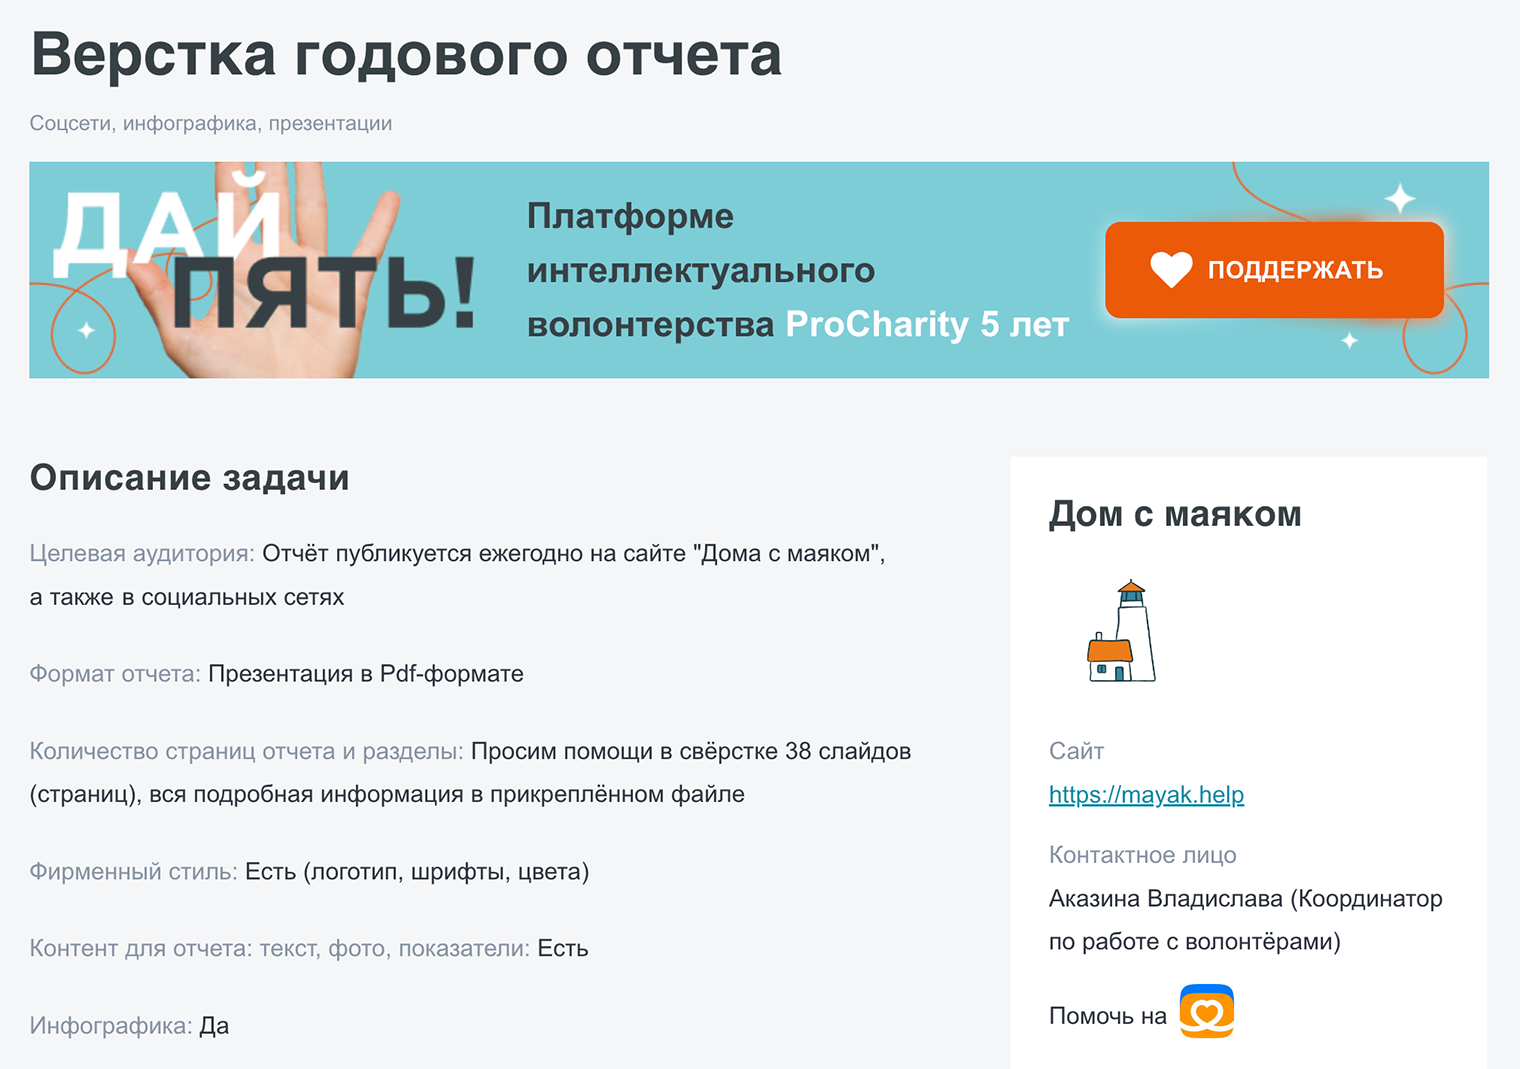 Задание по верстке годового отчета на платформе ProCharity от фонда «Дом с маяком». Источник: procharity.ru